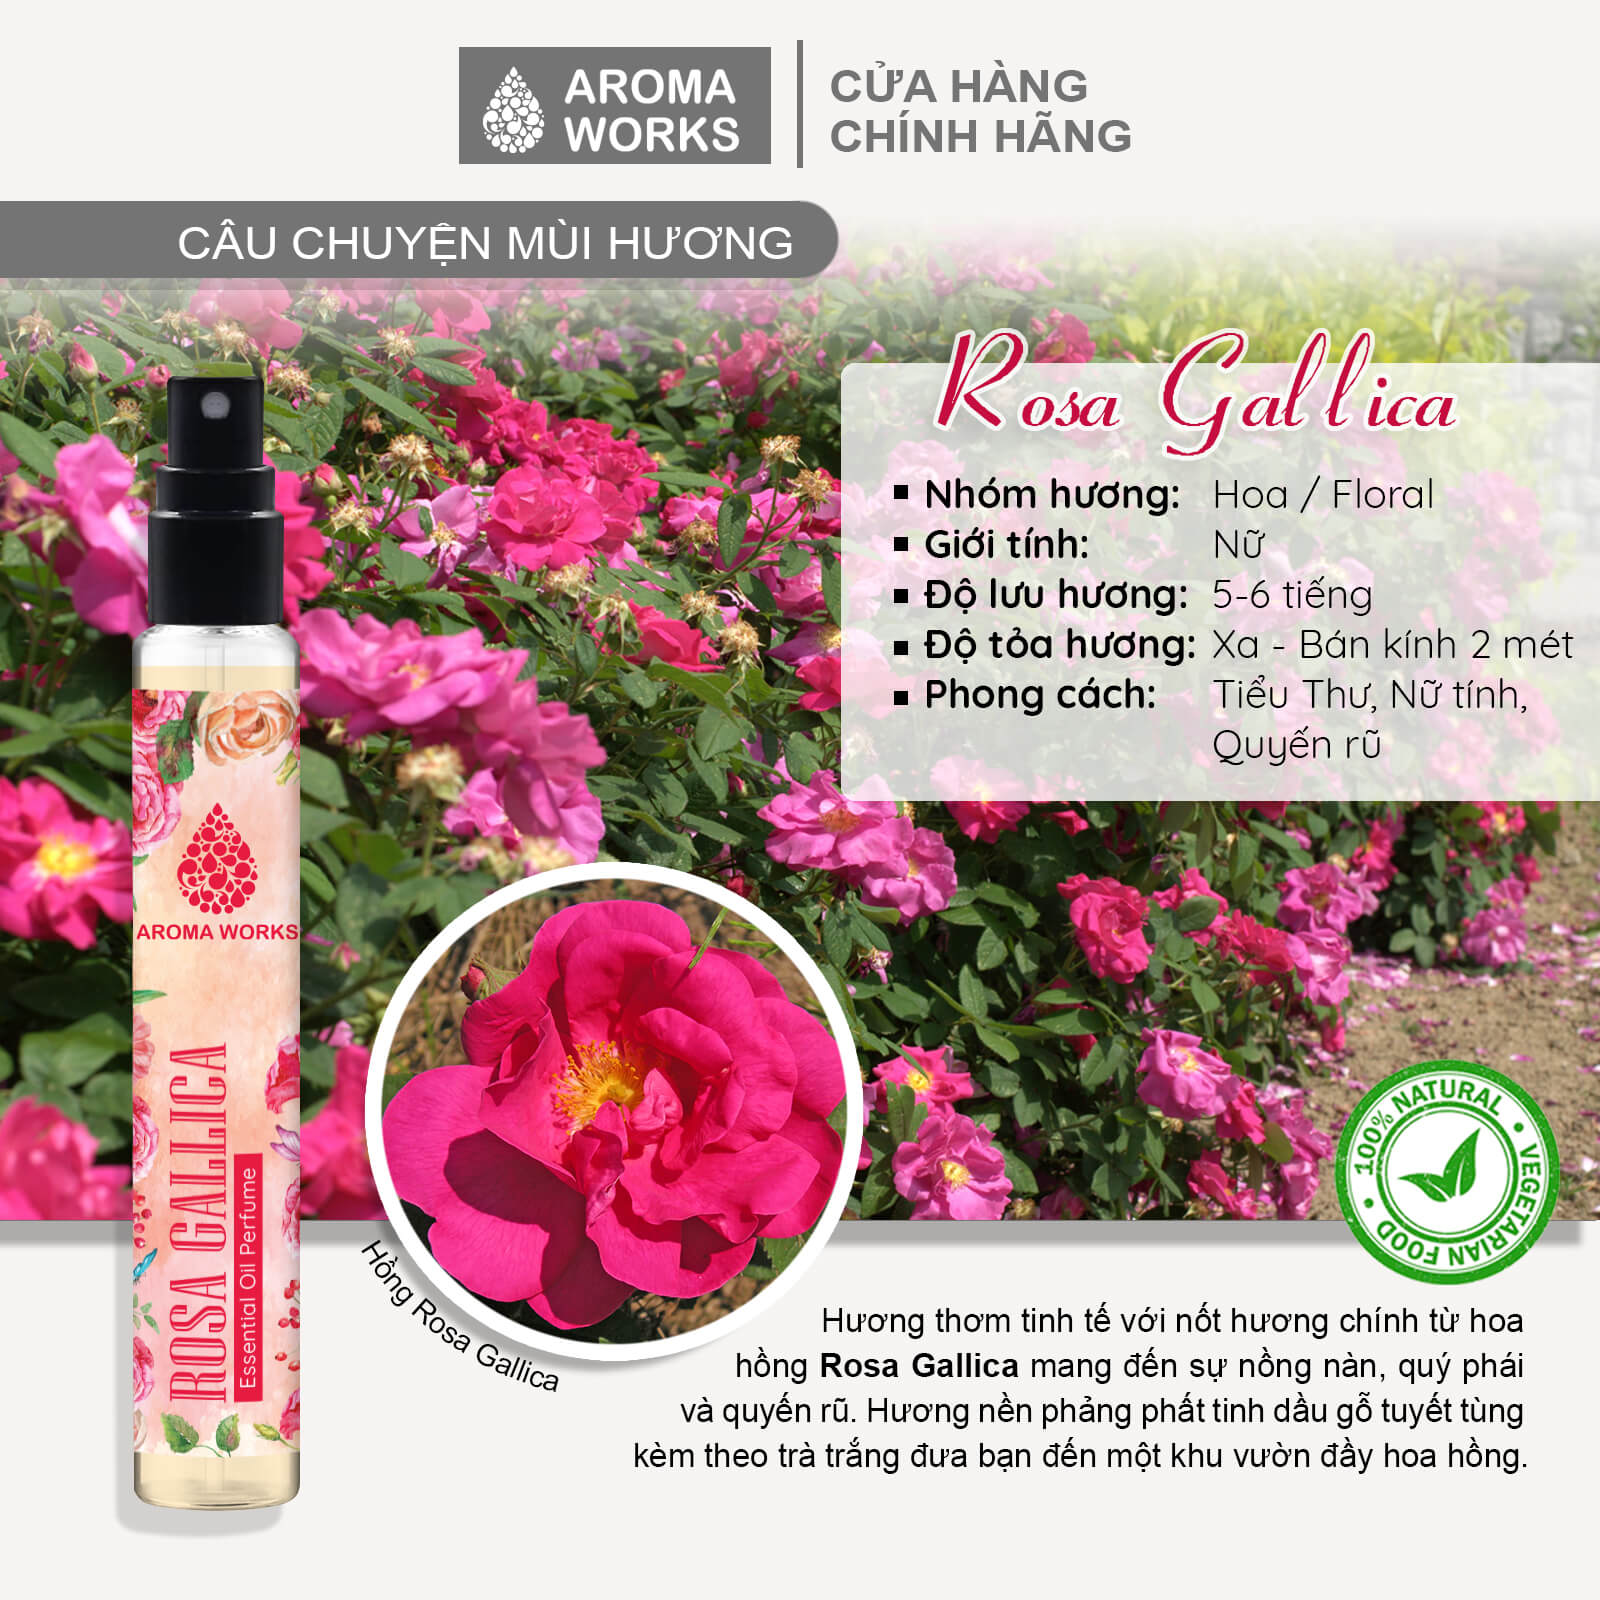 Tinh dầu nước hoa không cồn, lưu hương lâu Aroma Works Rosa Gallica Essential Oil Perfume 10ml